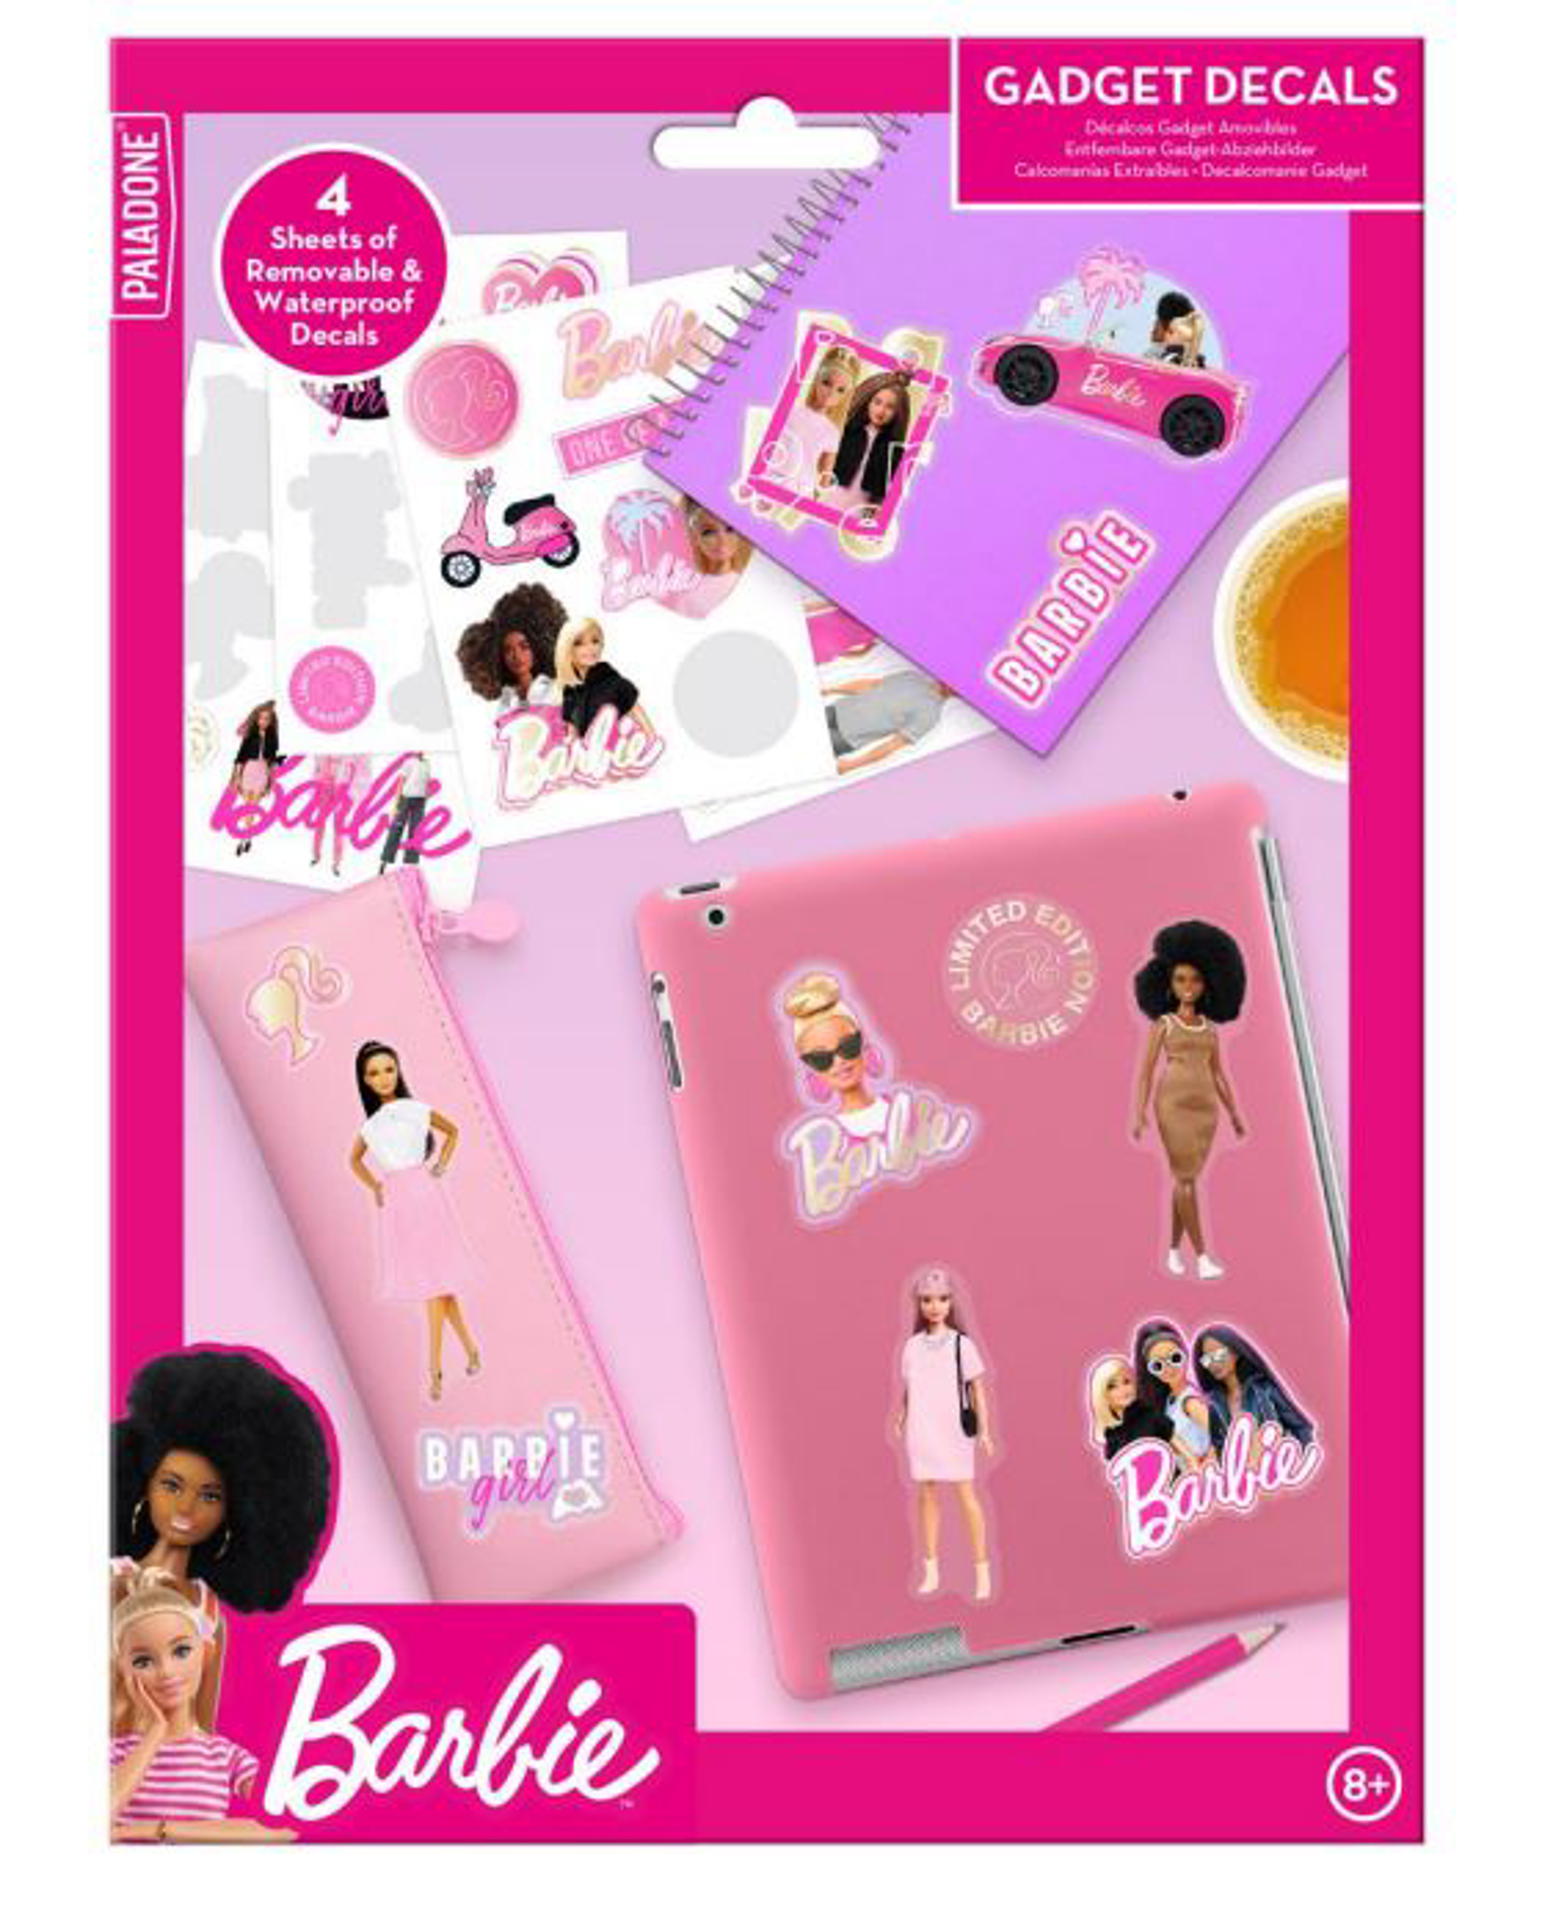 Barbie - Gadget Decals